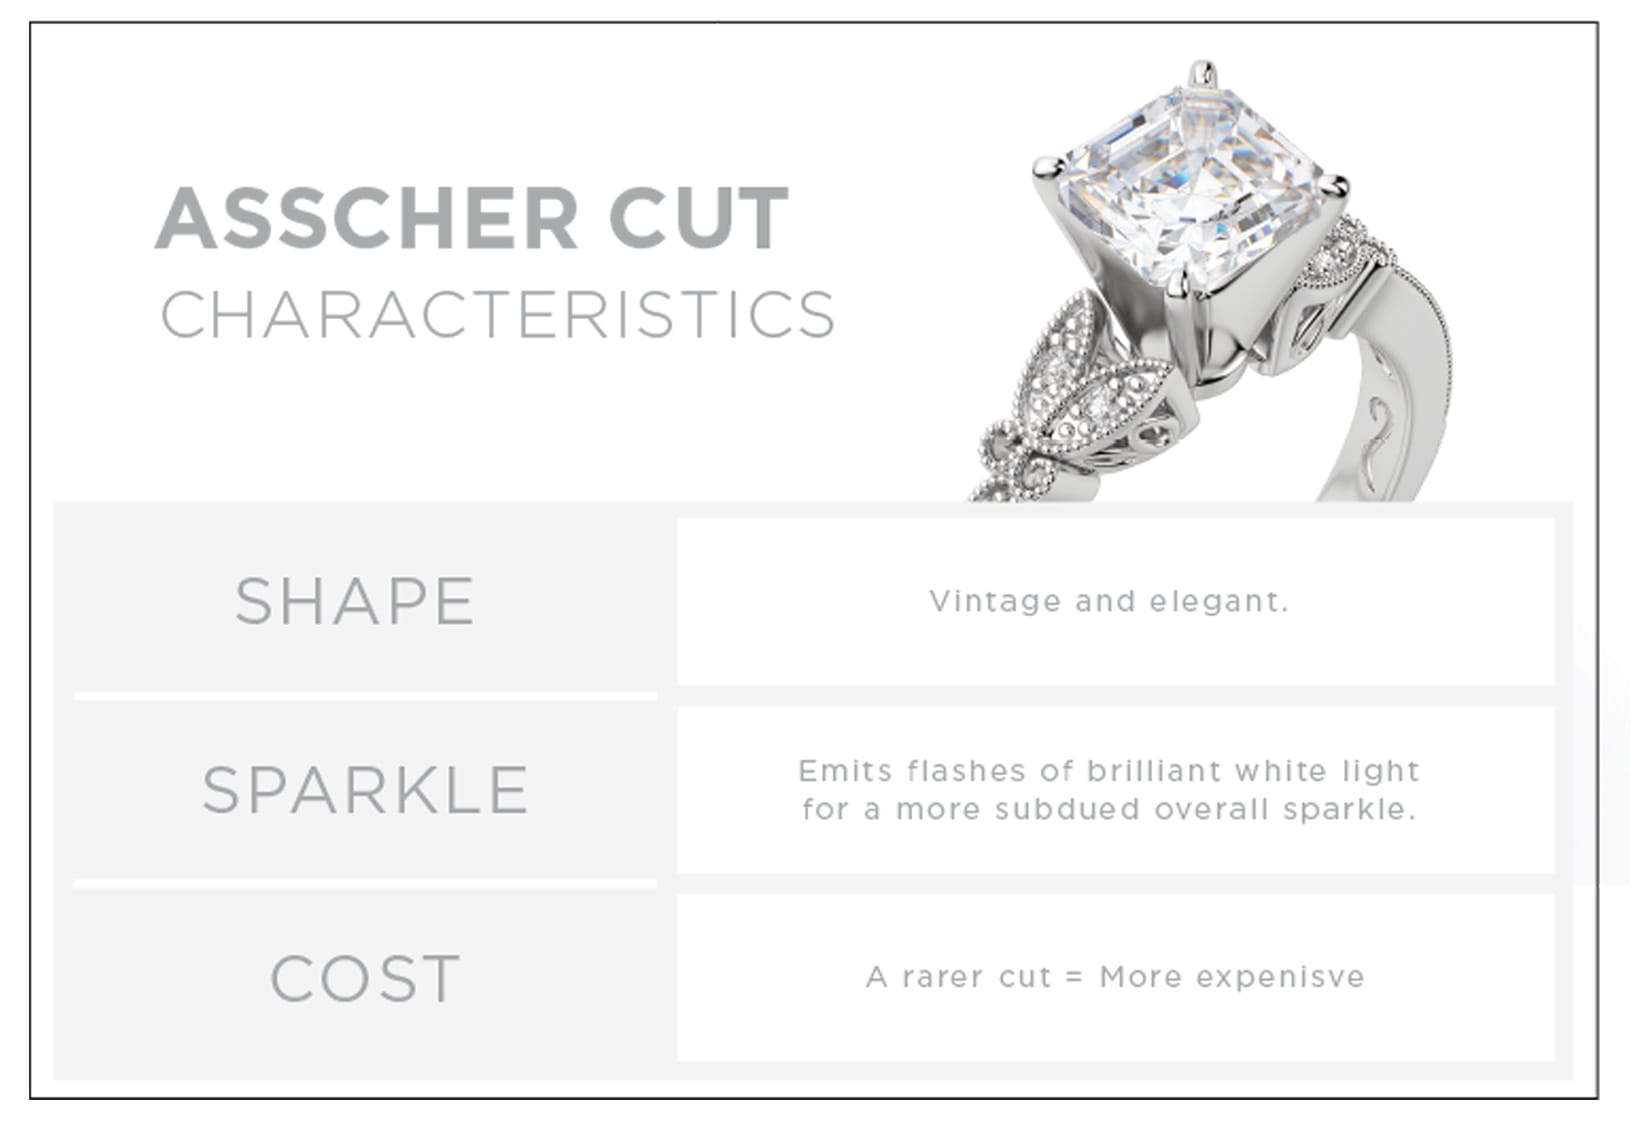 Characteristics of an Asscher cut diamond